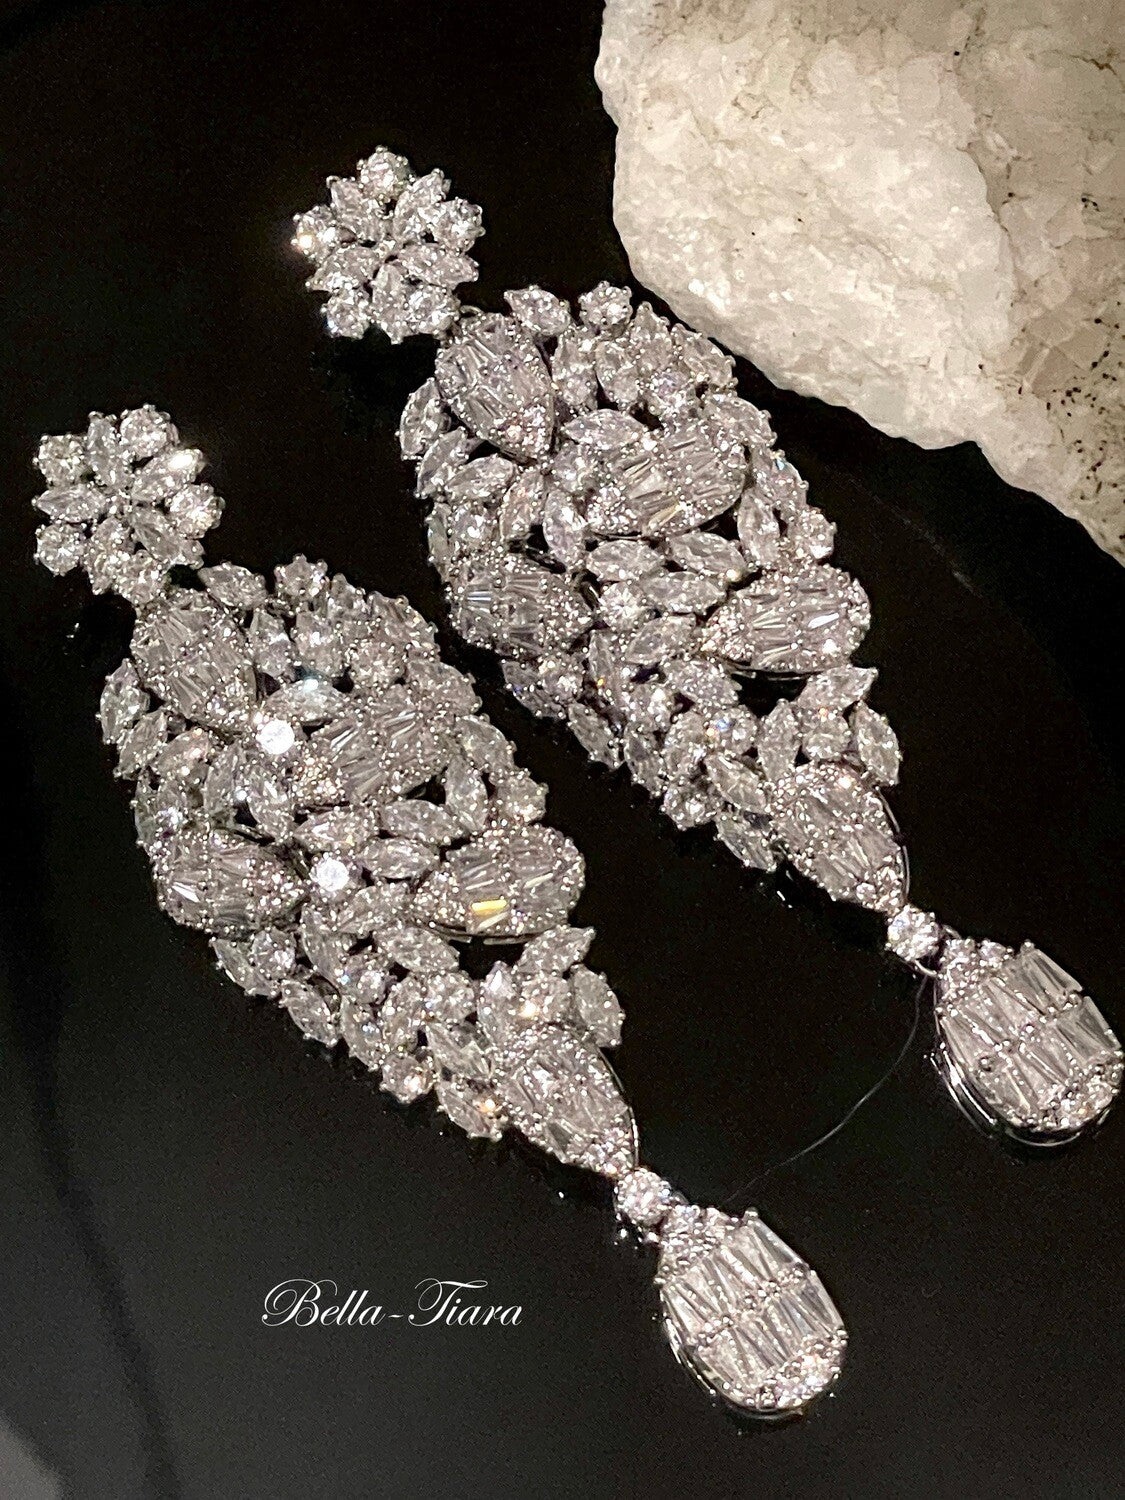 Marieantoniette - Swarovski crystal bridal earrings